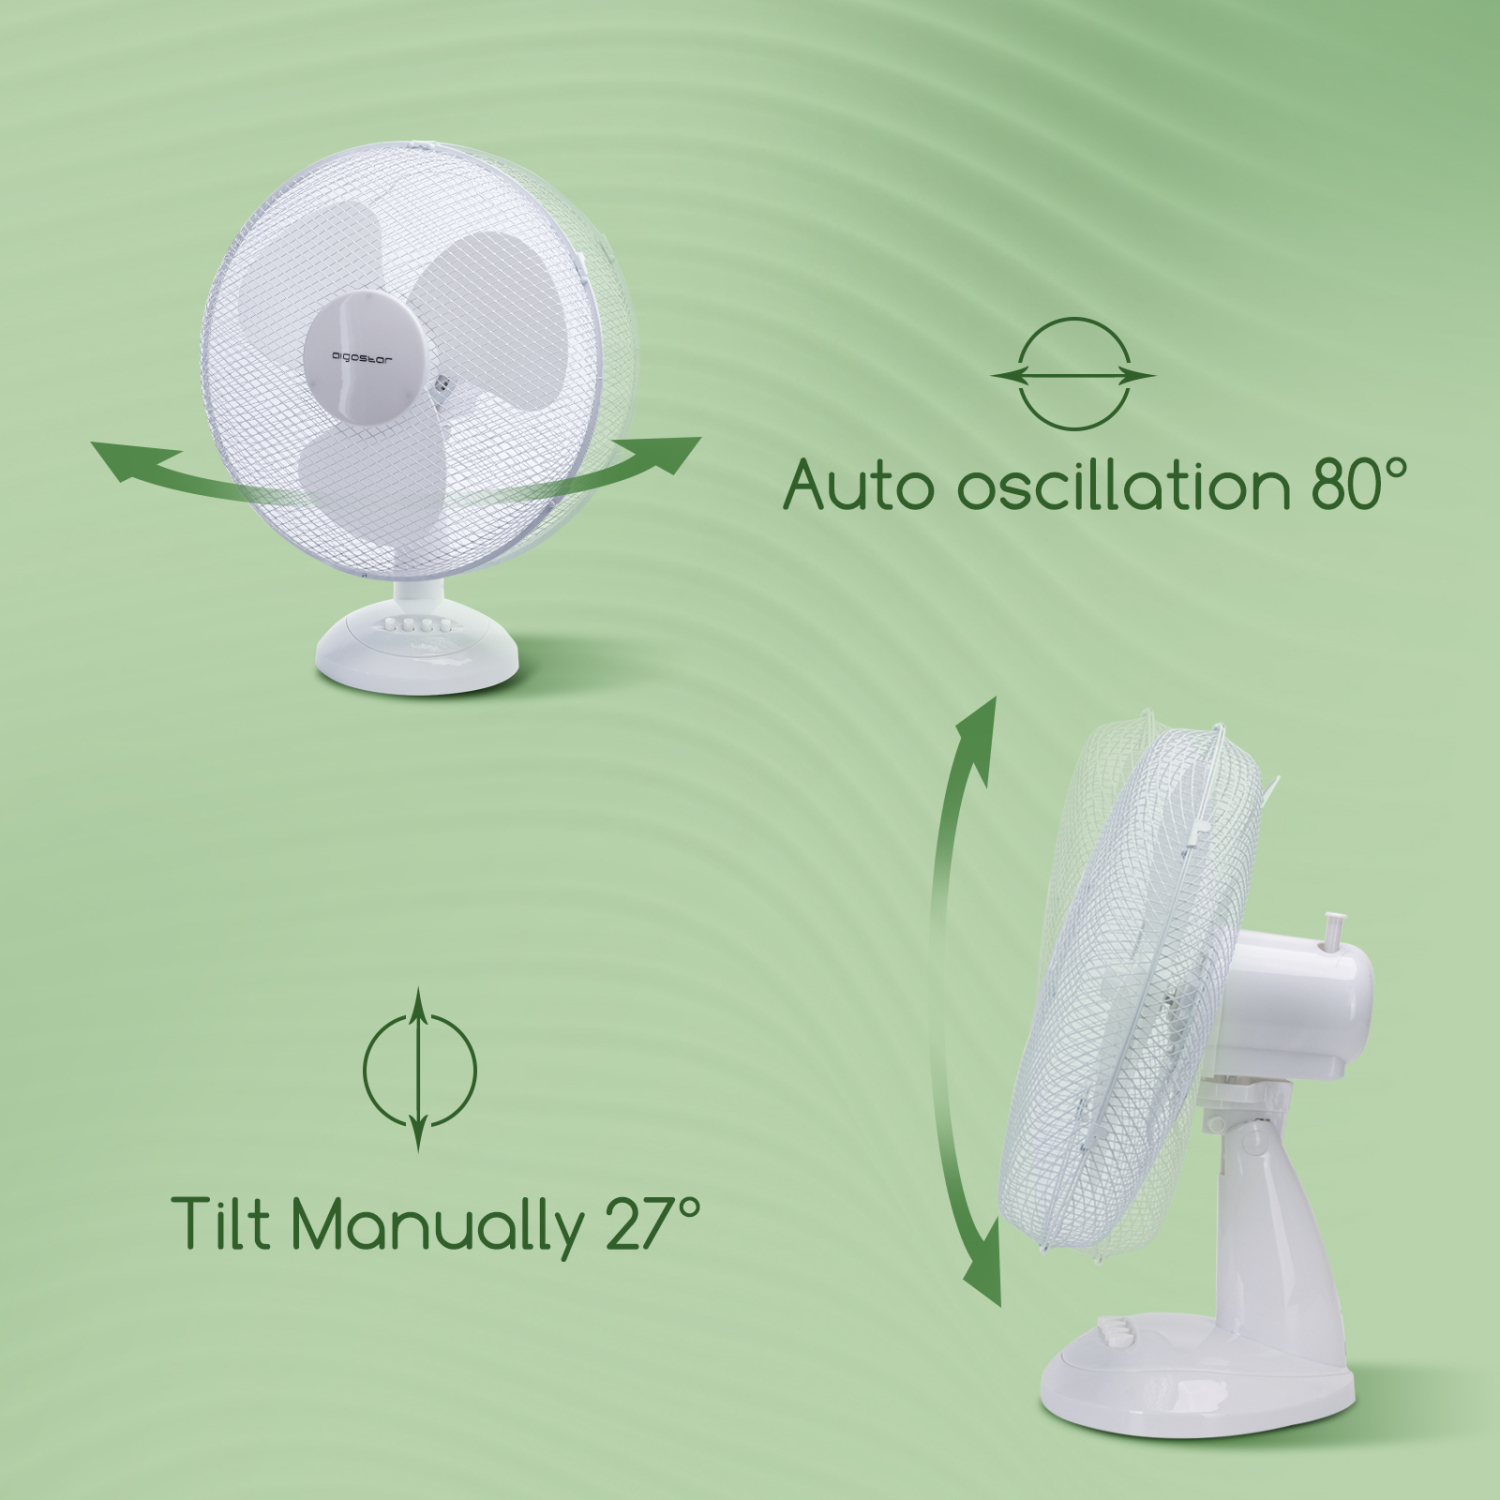 Aigostar Allace 33JTO - Ventilatore da tavolo, silenzioso, 3 impostazioni di velocità, 42 cm, 2,5 kg, oscillazione di 80 gradi. Design esclusivo